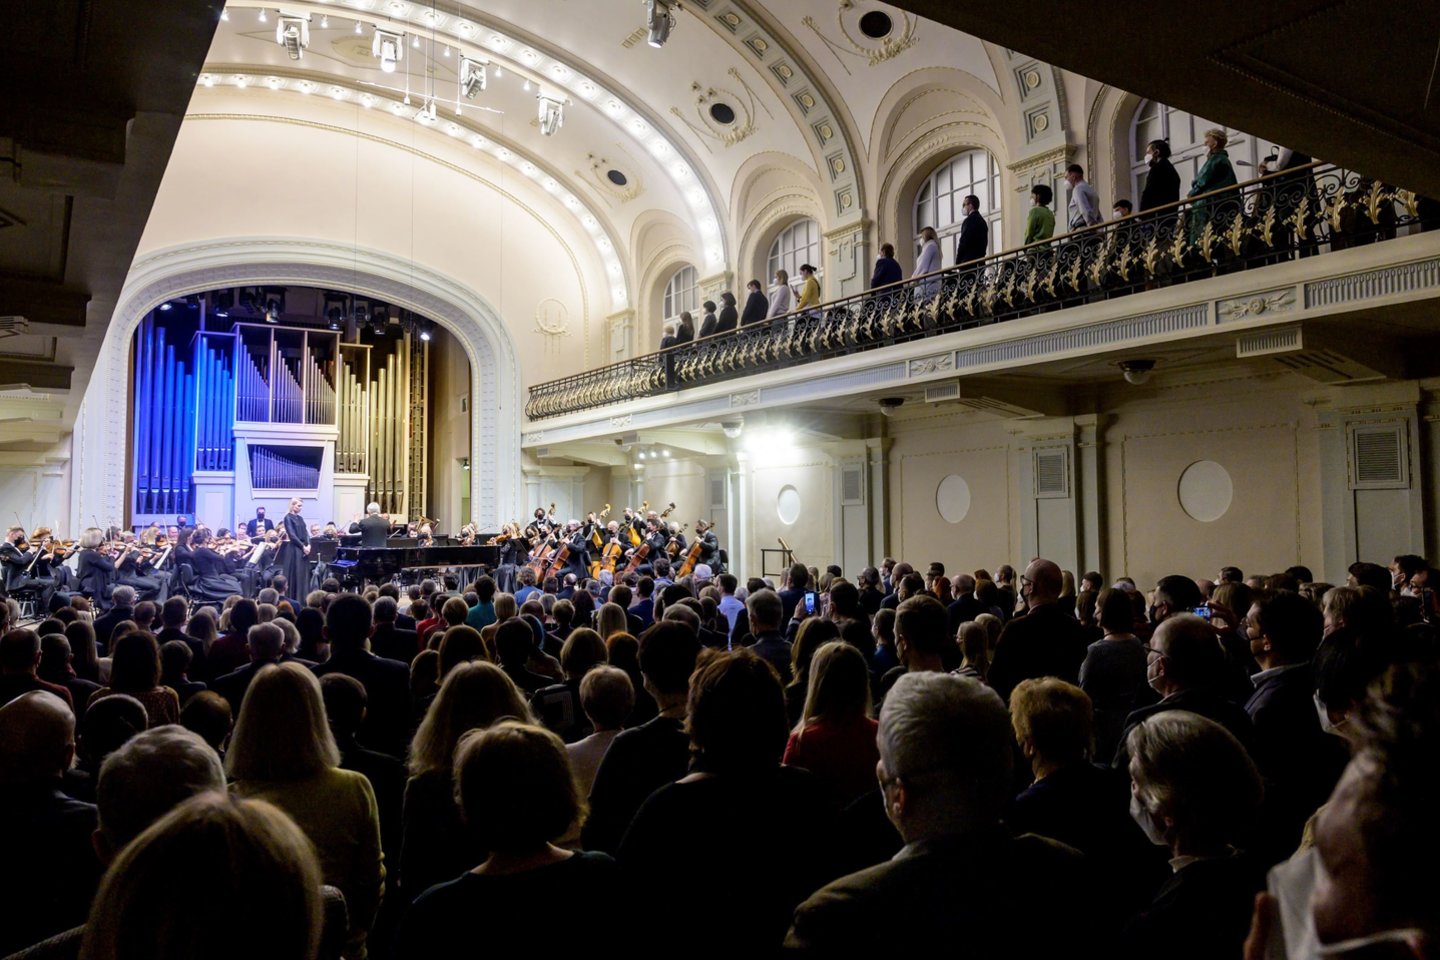  A.Botvinovo koncertas Nacionalinėje filharmonijoje. <br> D.Matvejevo nuotr.